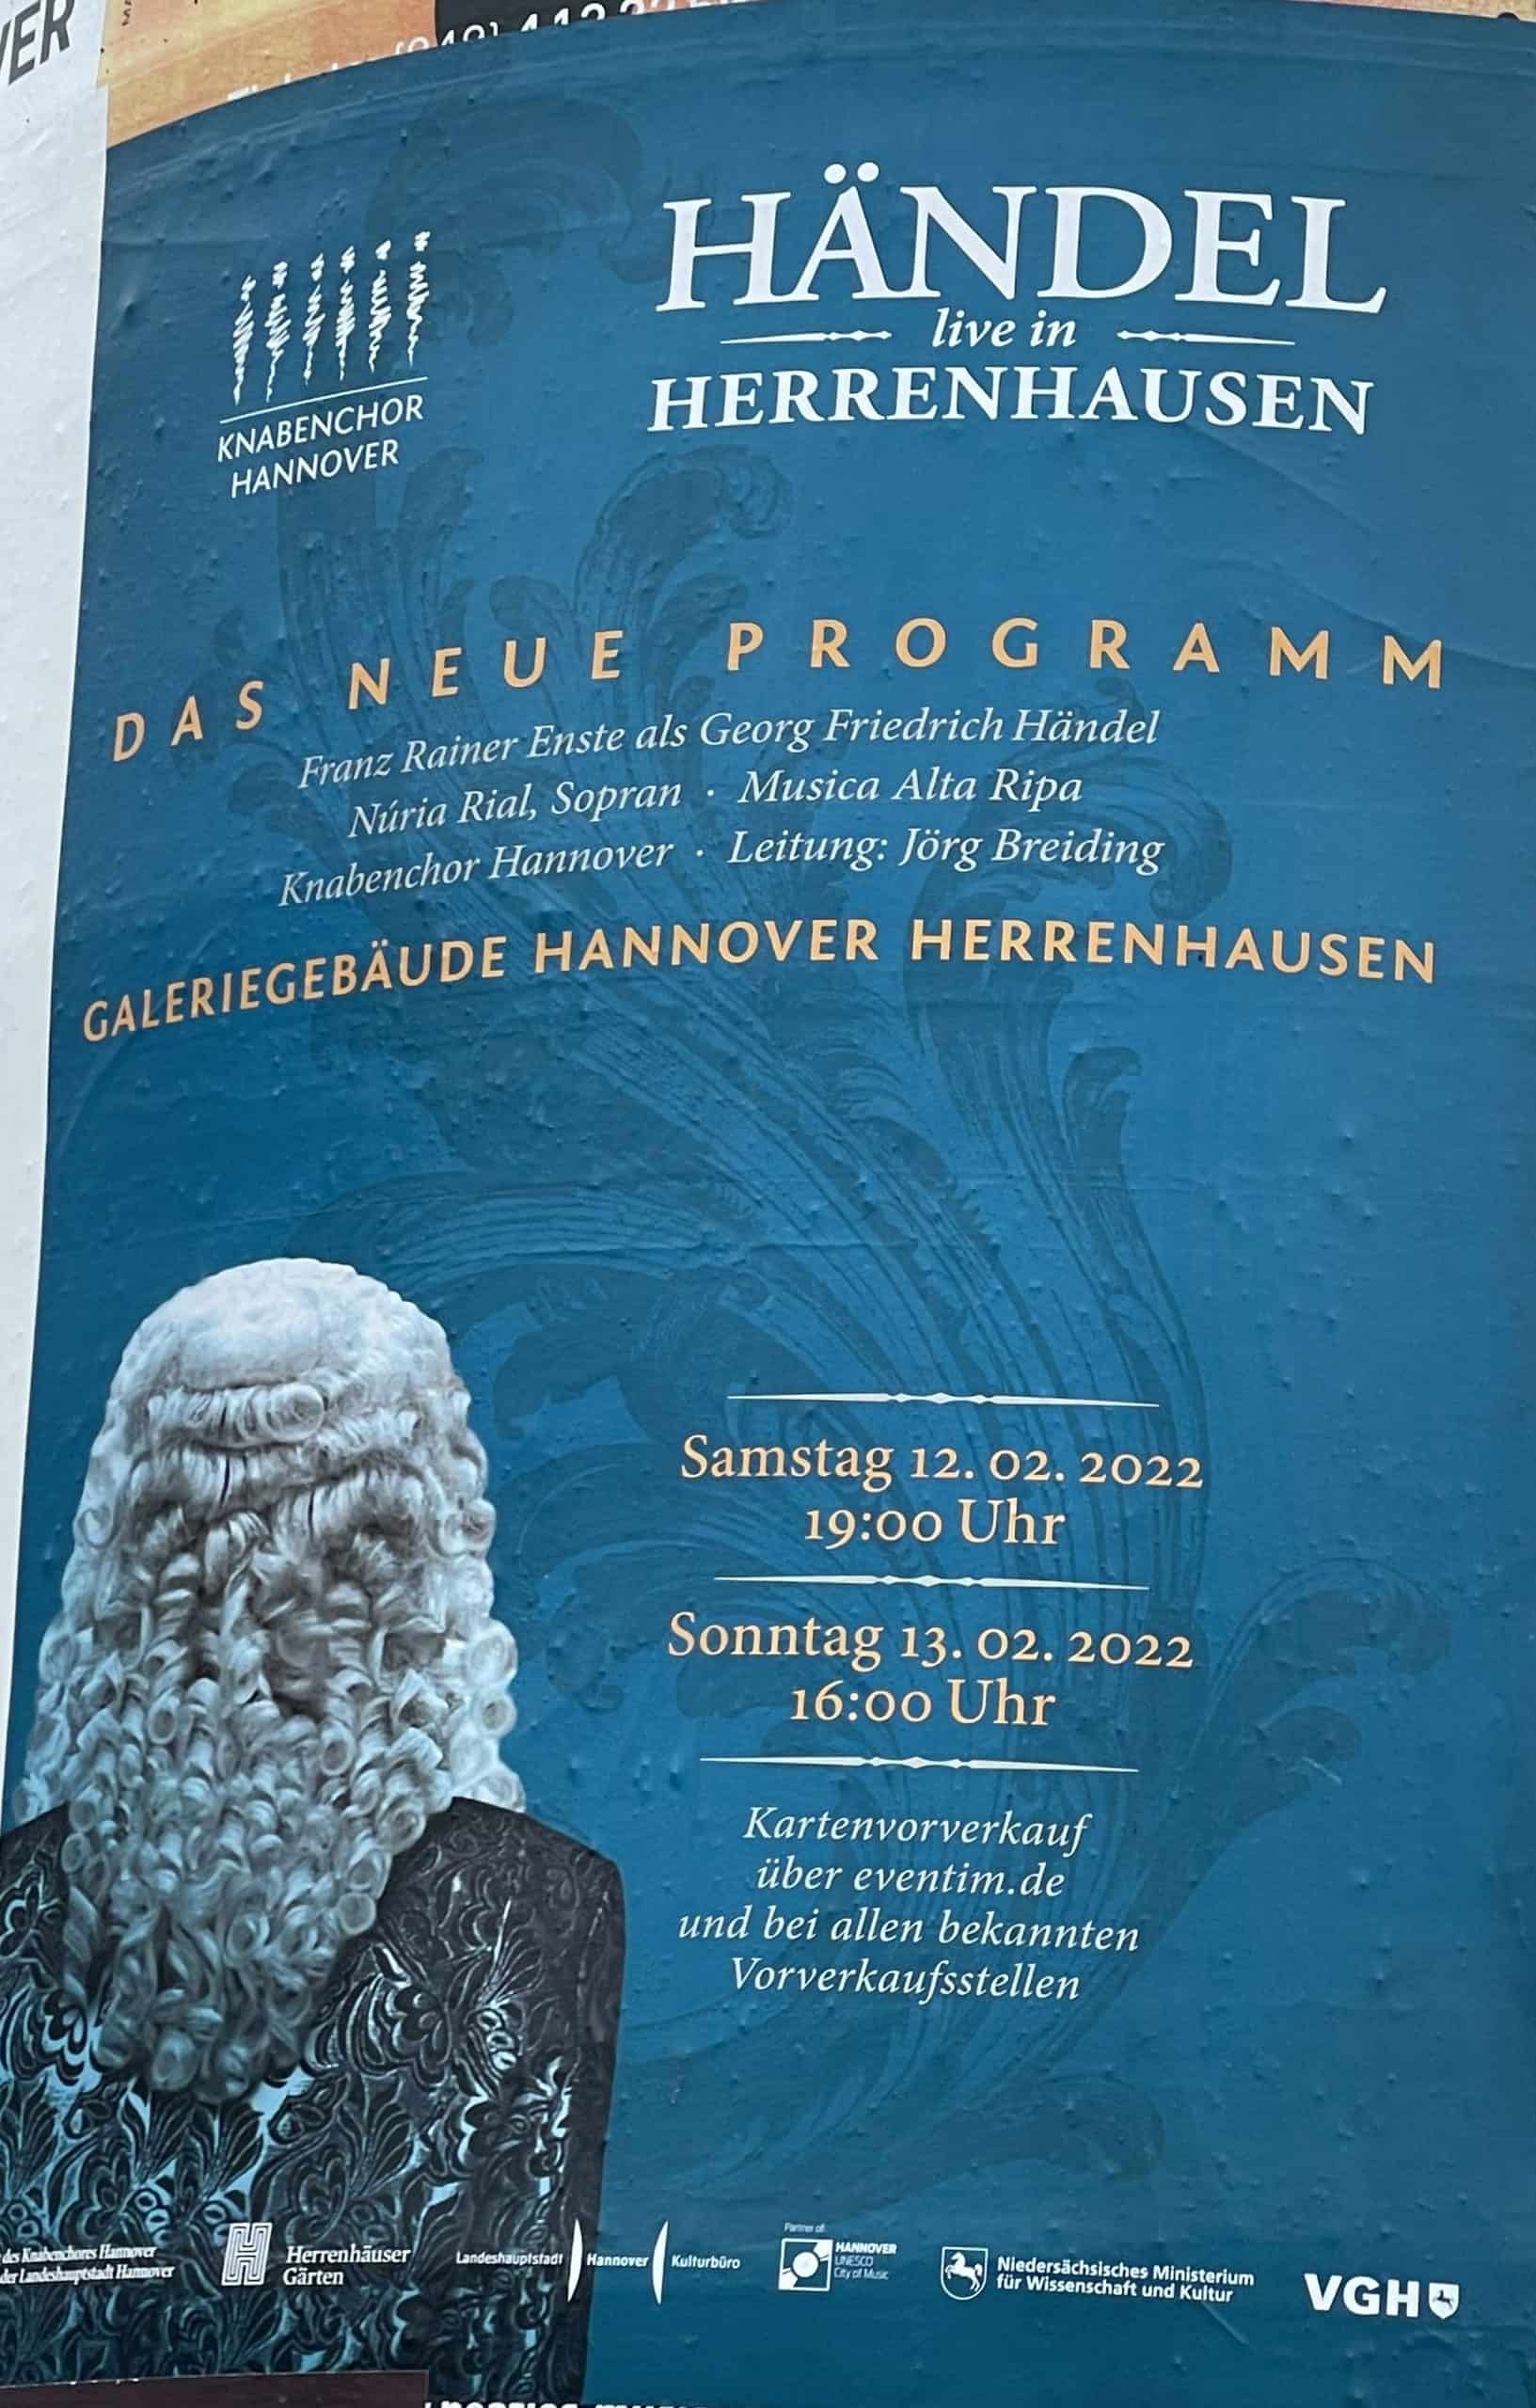 Händel in Herrenhausen